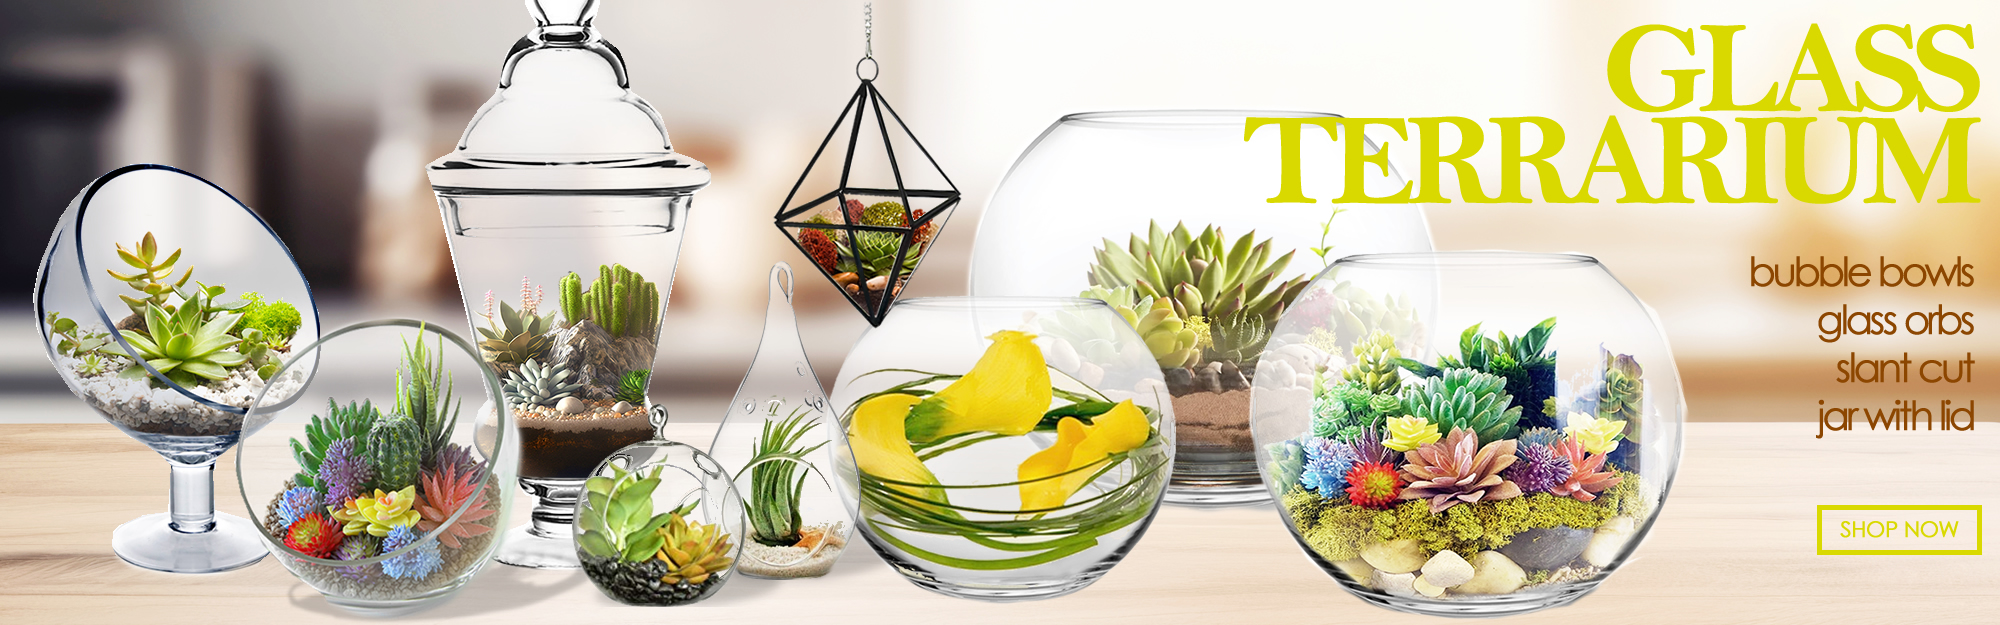 Click to view more terrarium vases